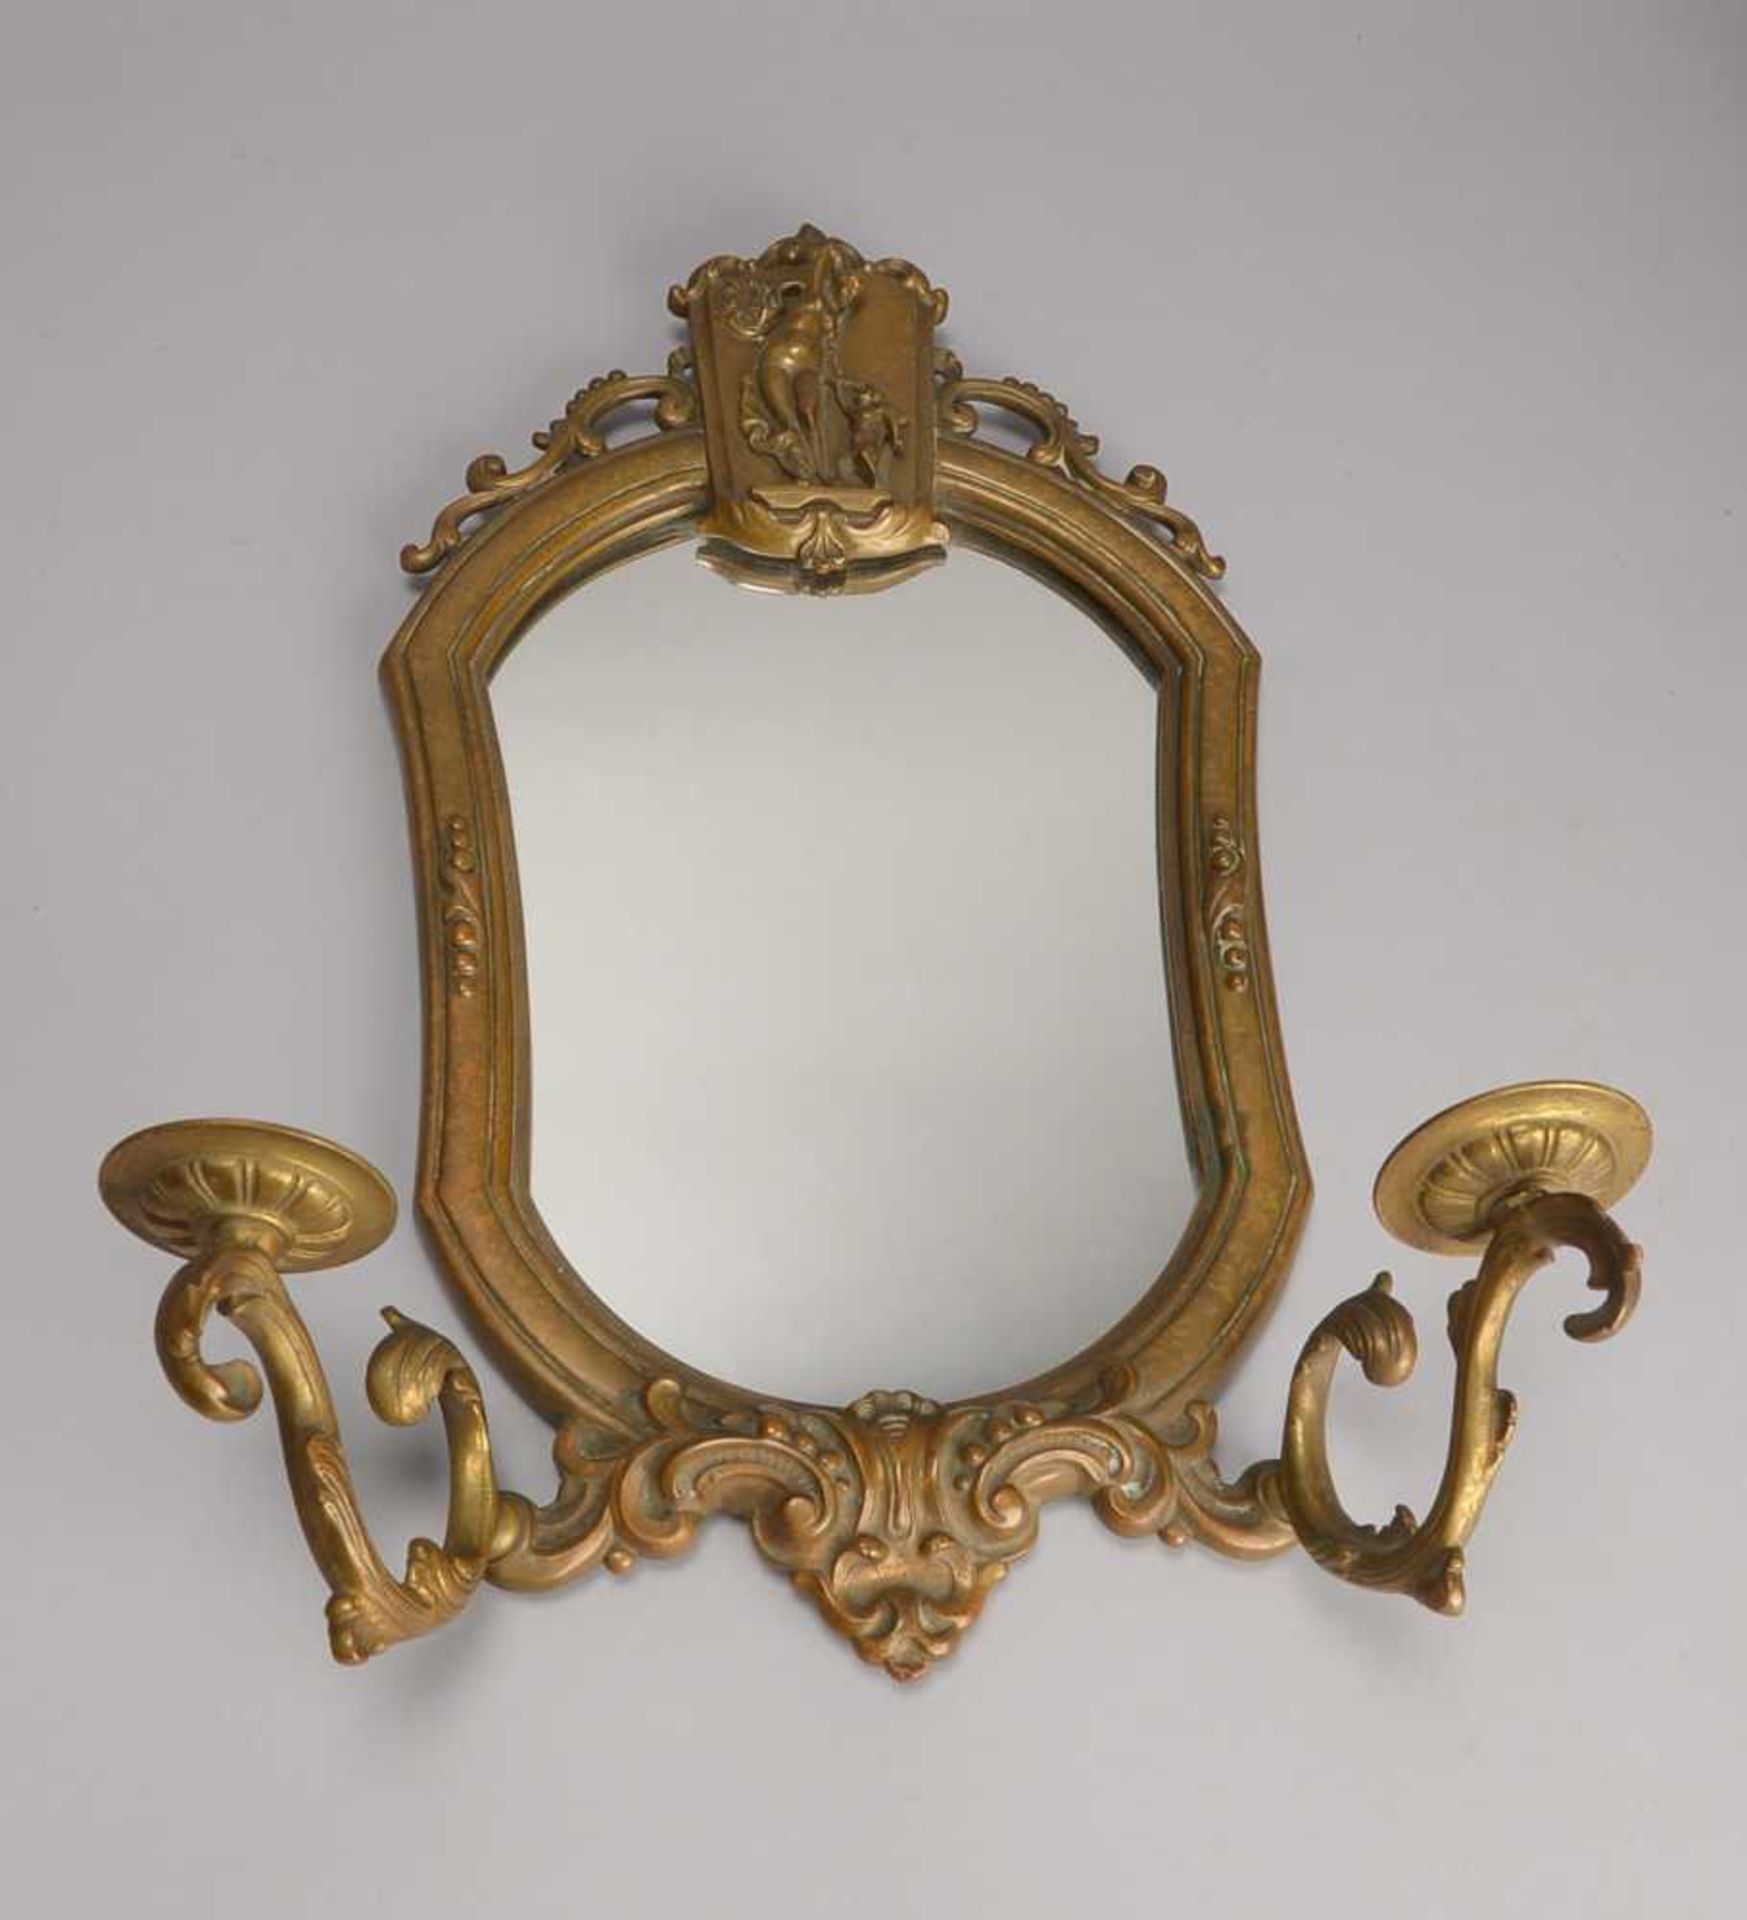 Jugendstil-Spiegel, alt, Bronze; Maße Spiegel ca. 28 x 20 cm, Gesamthöhe 46 cm, Gesamtbreite 32